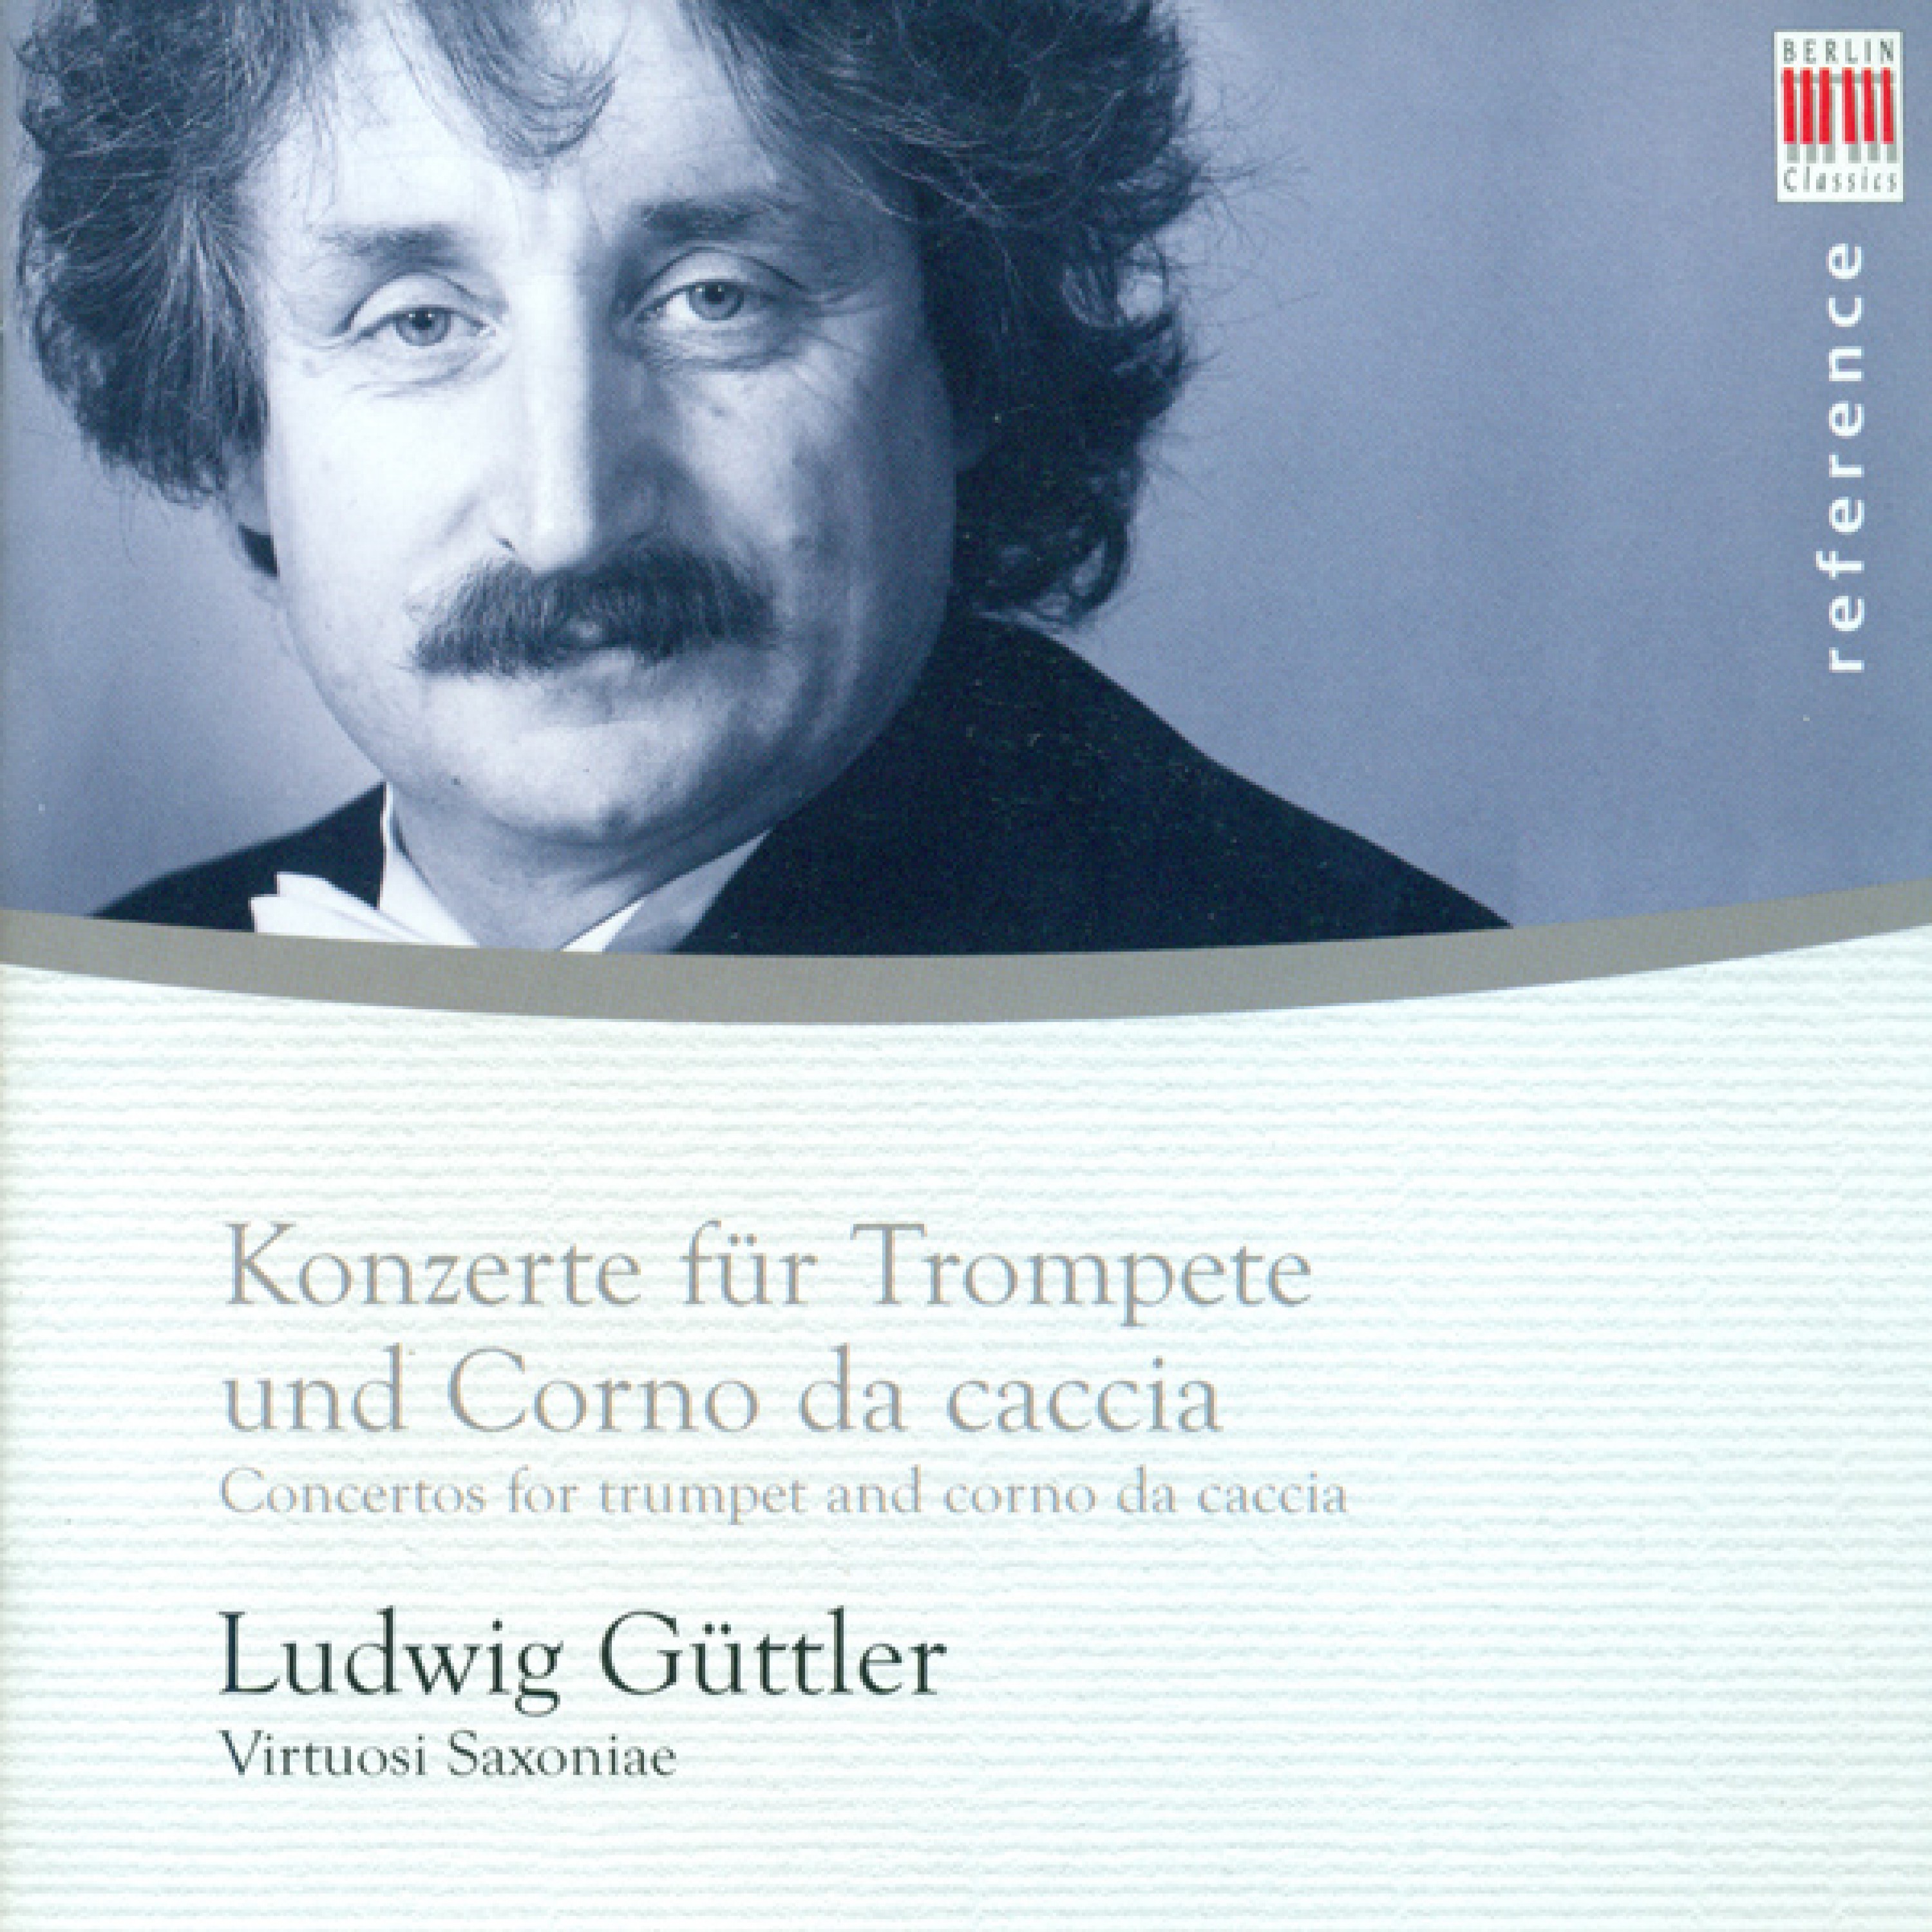 Concerto for 2 Corni da caccia and 2 Violins in G Major, Op. 6, No. 17: II. Adagio